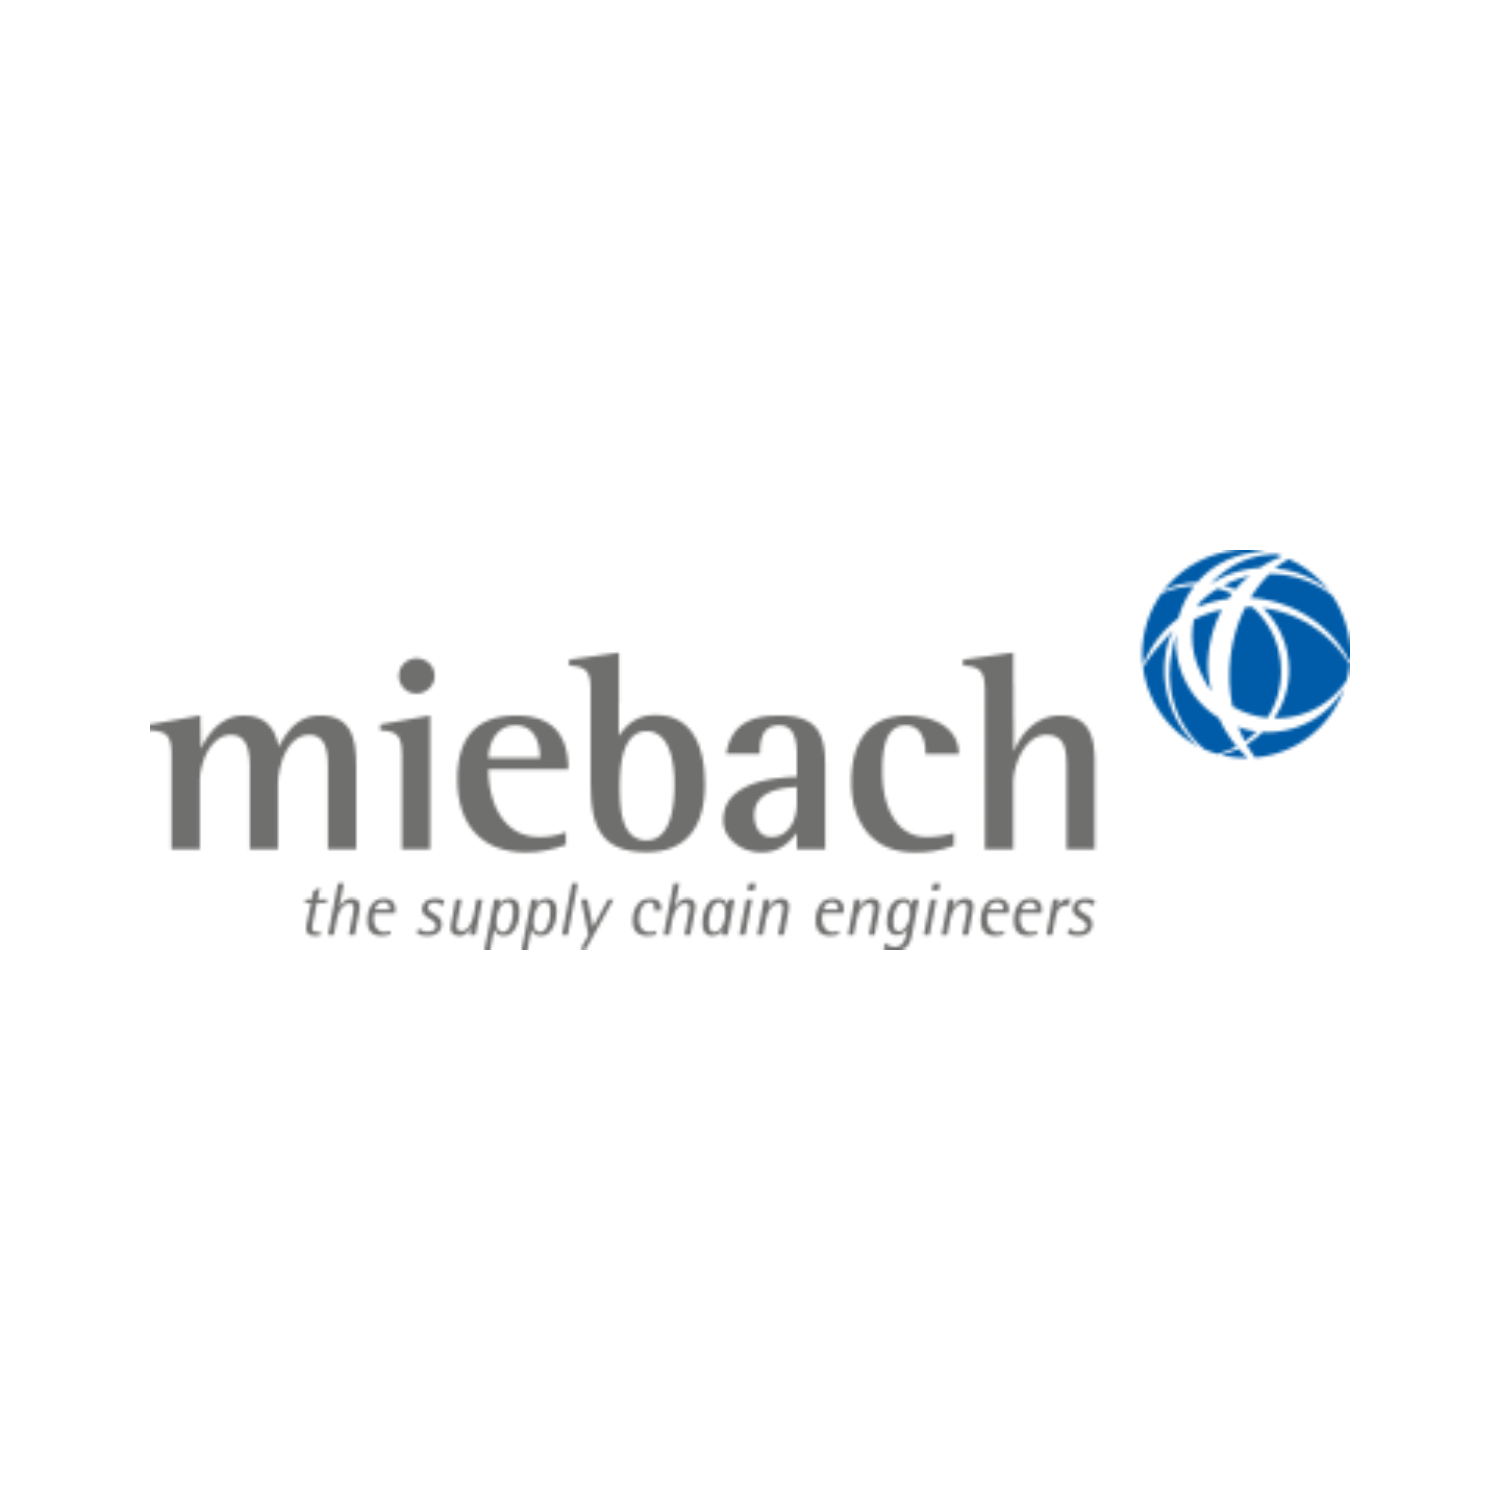 miebach_logo